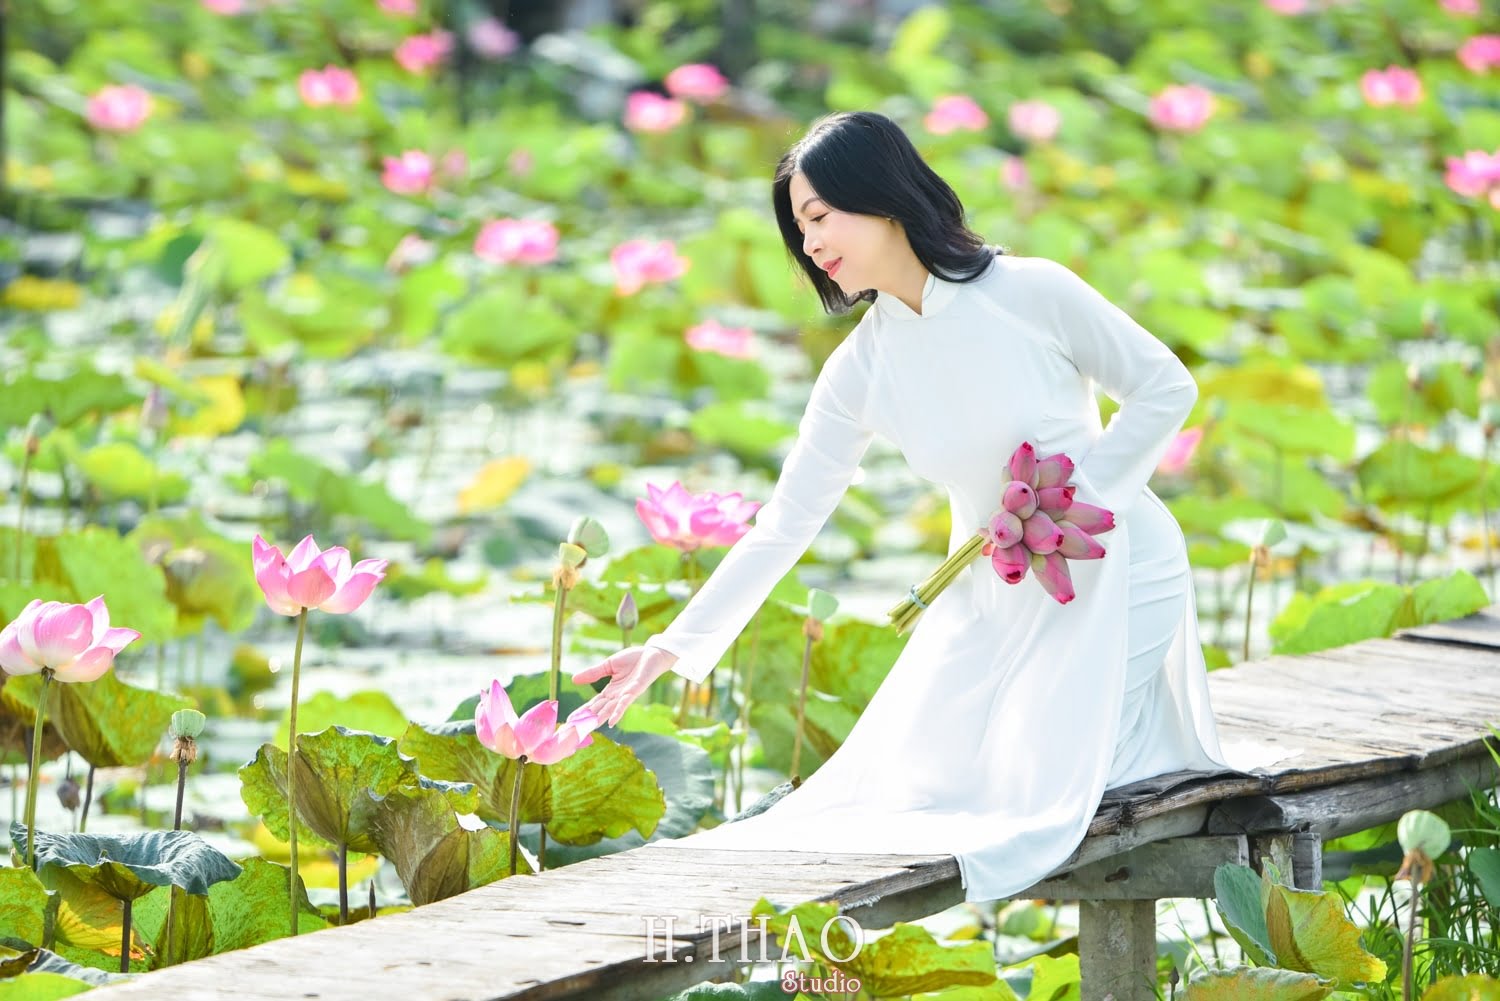 Anh Hoa sen 8 min - 49 cách tạo dáng chụp ảnh với áo dài tuyệt đẹp - HThao Studio